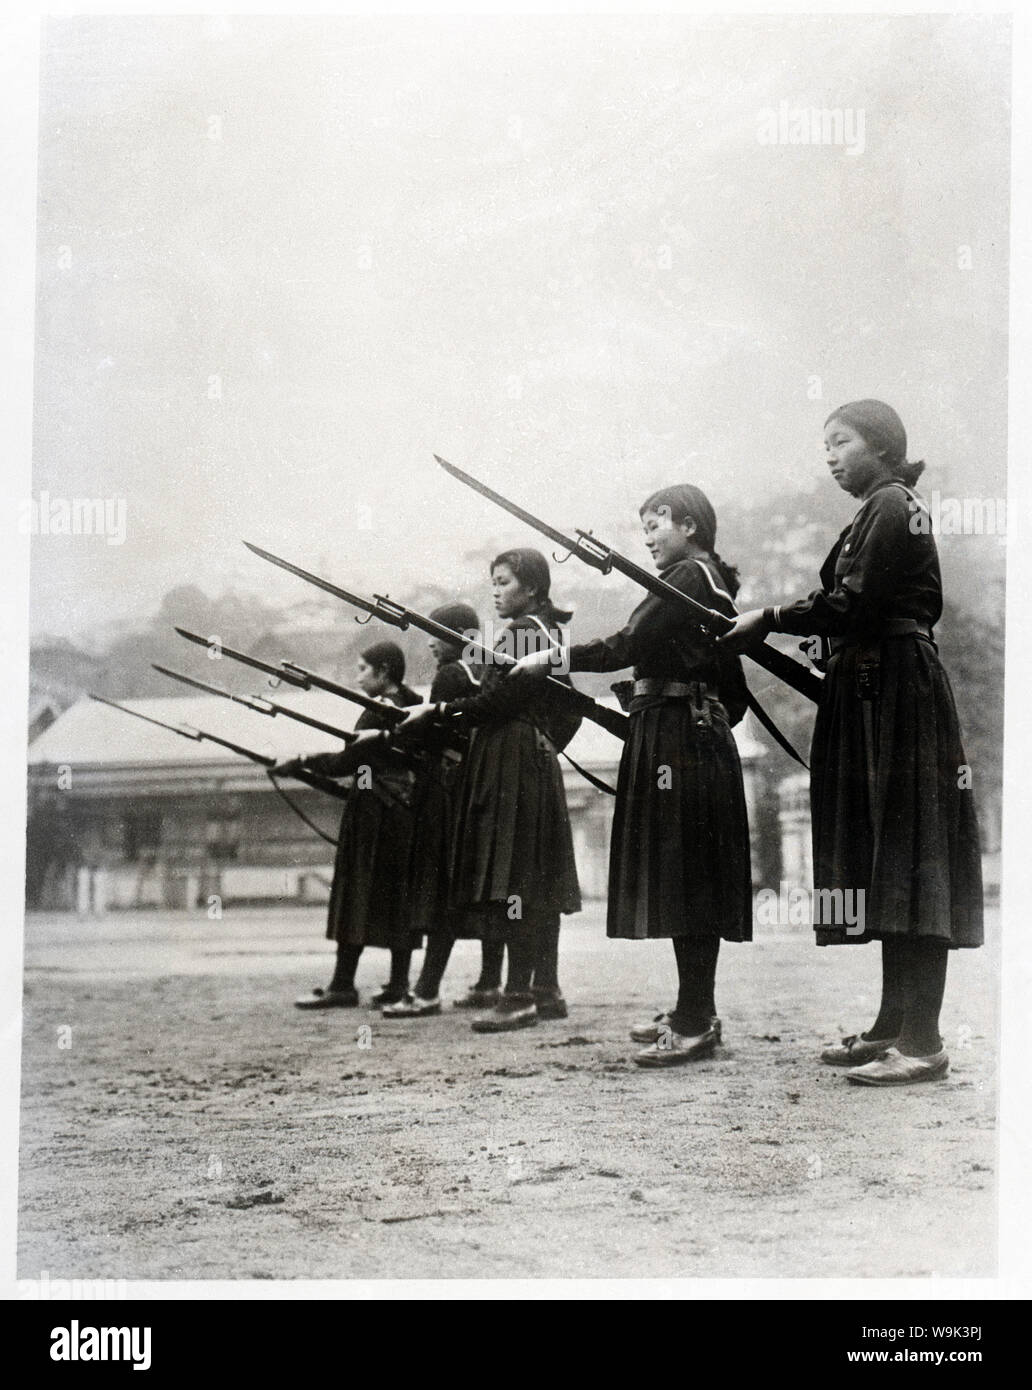 [1930er Jahre Japan - militärische Ausbildung für Japanische High School Mädchen] - Studenten der Hinodo Girls High School in Meguro, Tokio, erhalten die militärische Ausbildung im März 1937 (Showa 12). Sie tragen High School Uniformen und Gewehre mit Bajonetten. 20. Jahrhundert vintage Silbergelatineabzug. Stockfoto